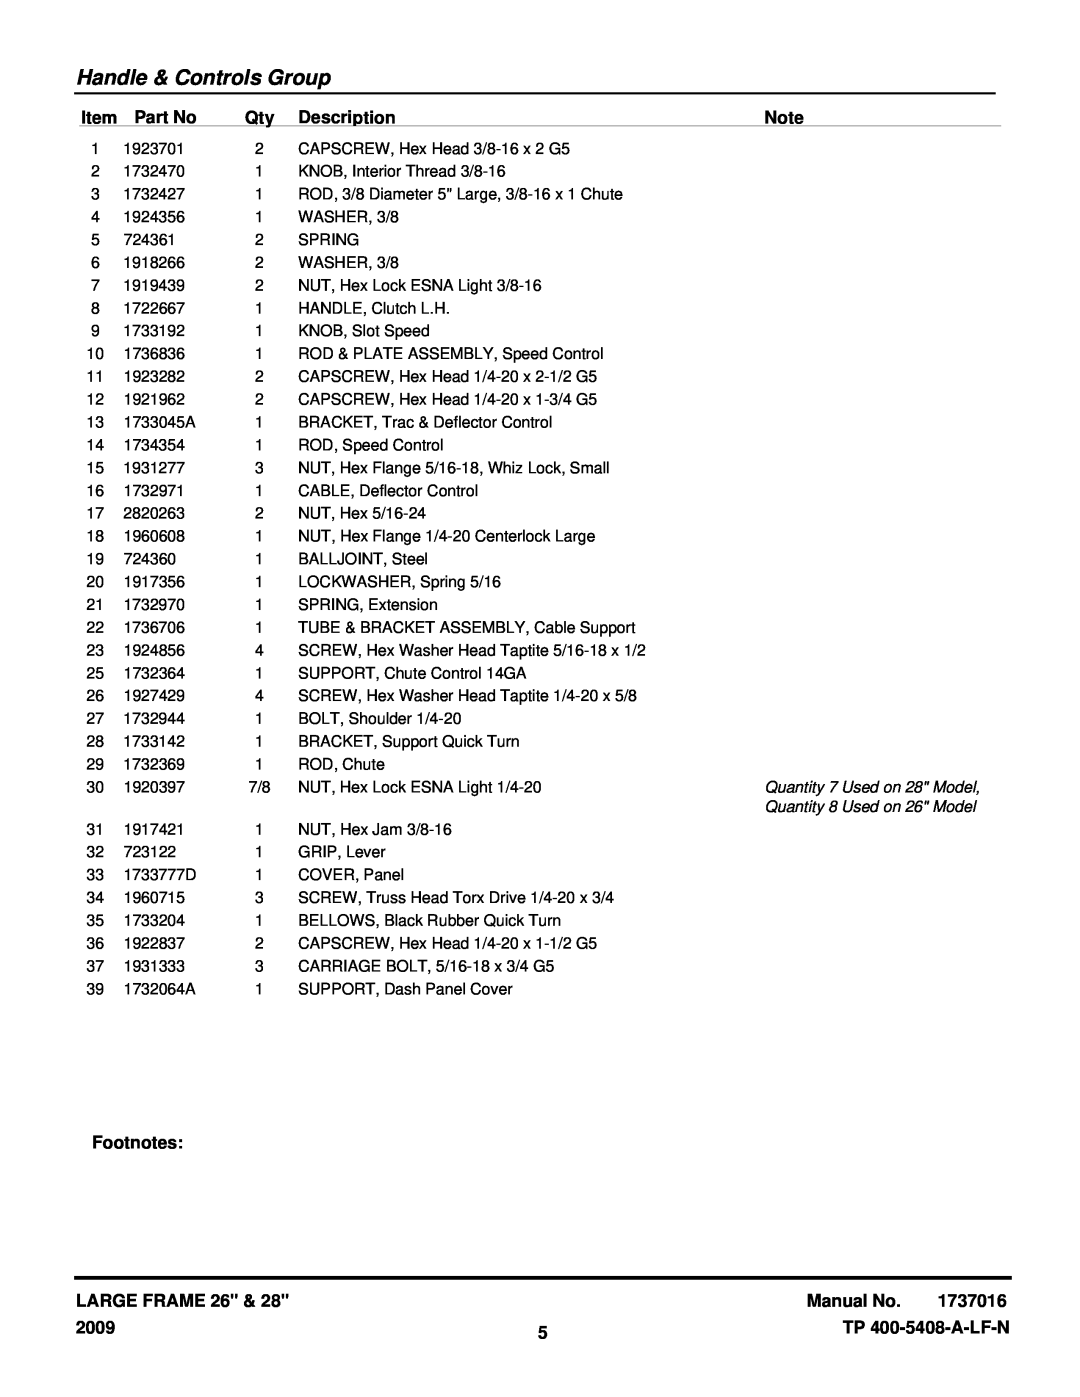 Snapper L1226E, L1428E Handle & Controls Group, Description, Footnotes, Large Frame, Manual No, 2009, TP 400-5408-A-LF-N 